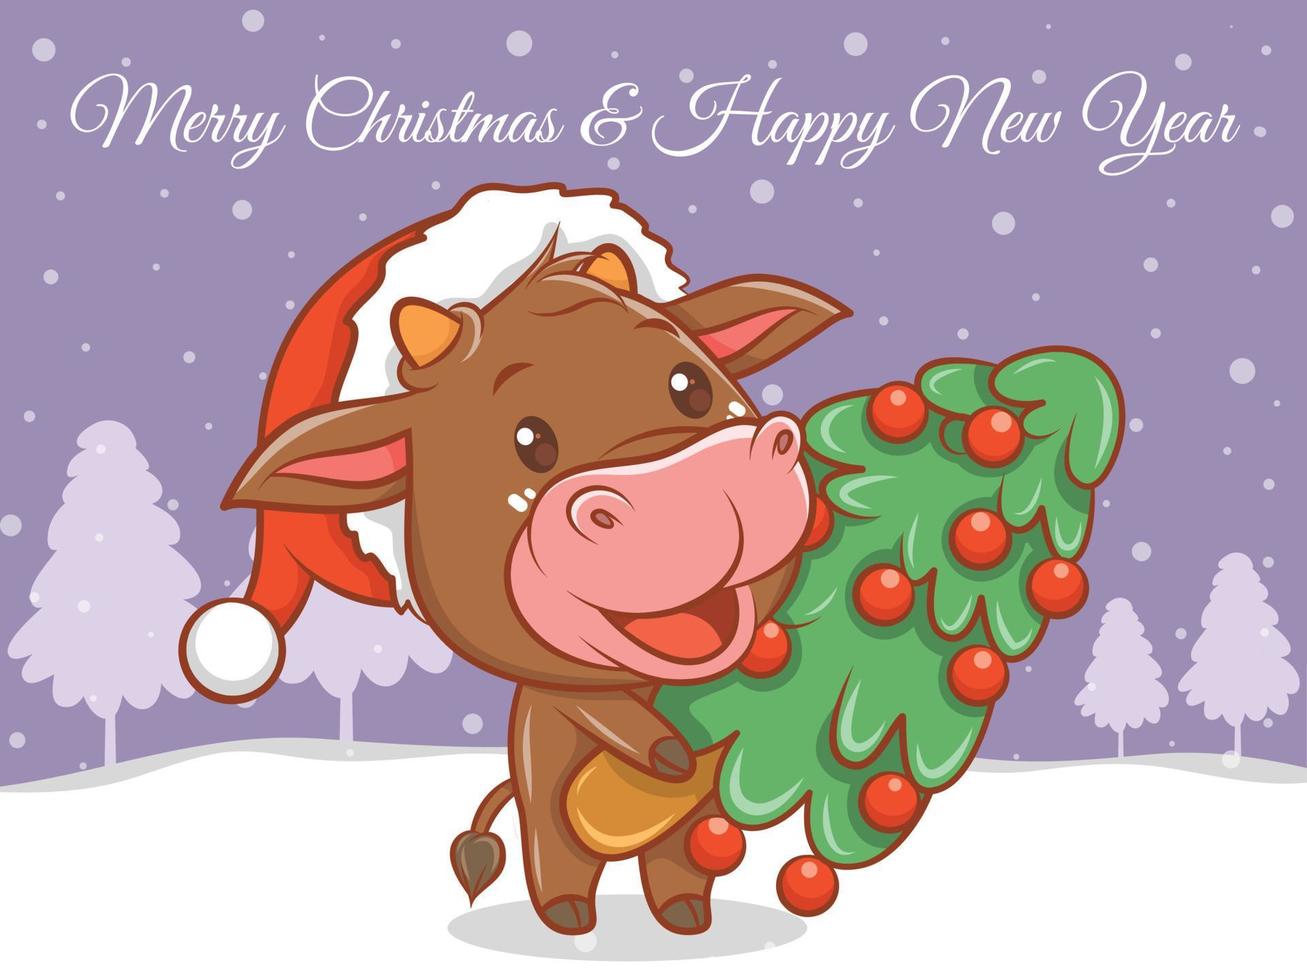 schattige koe stripfiguur met prettige kerstdagen en gelukkig nieuwjaar groet banner. vector